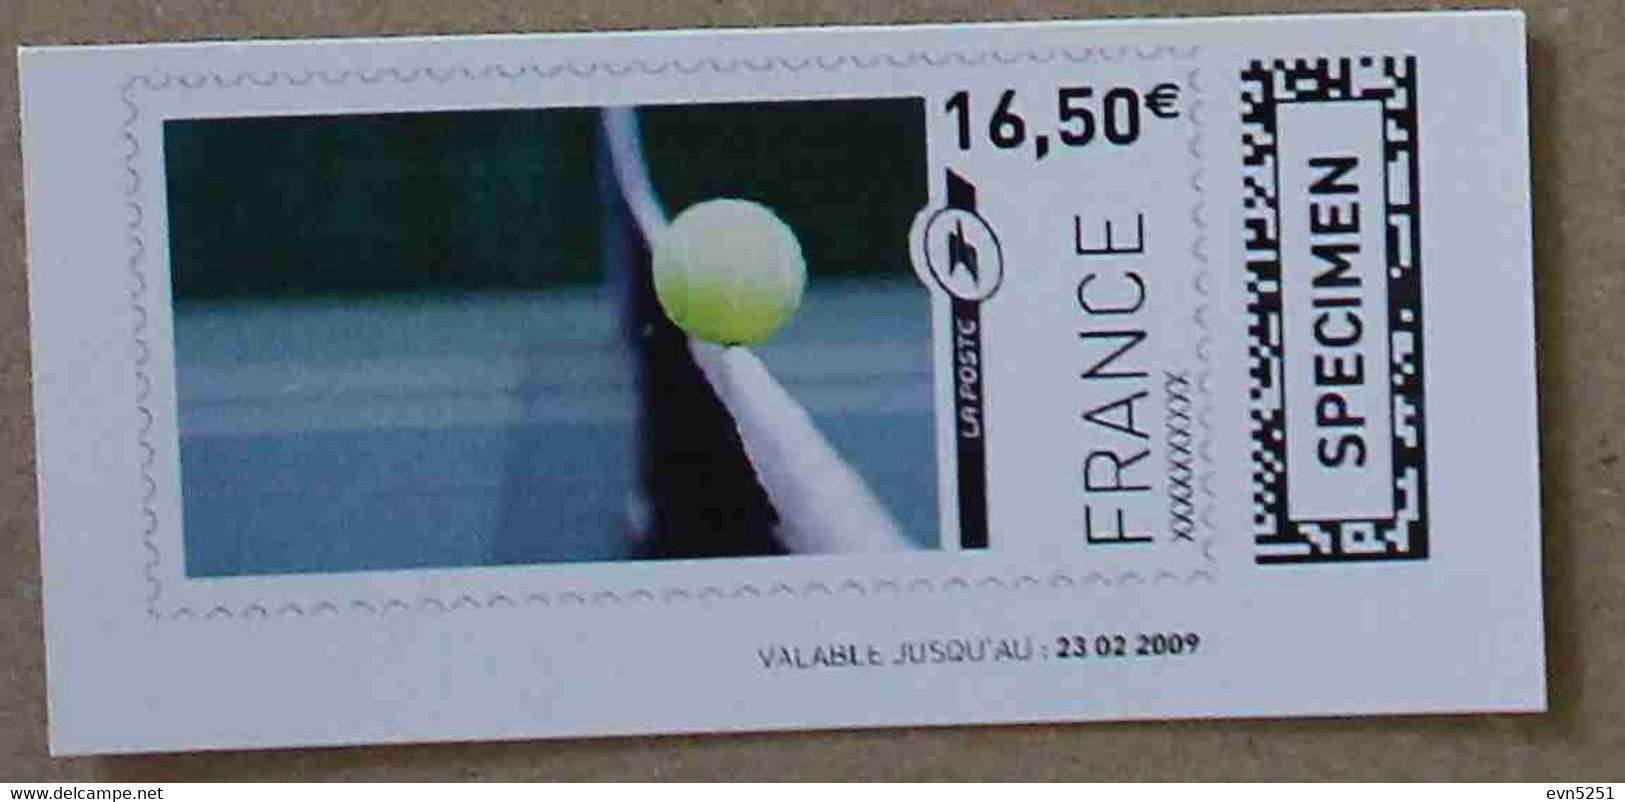 Ti02-03 : SPECIMEN - Balle De Tennis 16.50 € (autoadhésif / Autocollant) - Specimen